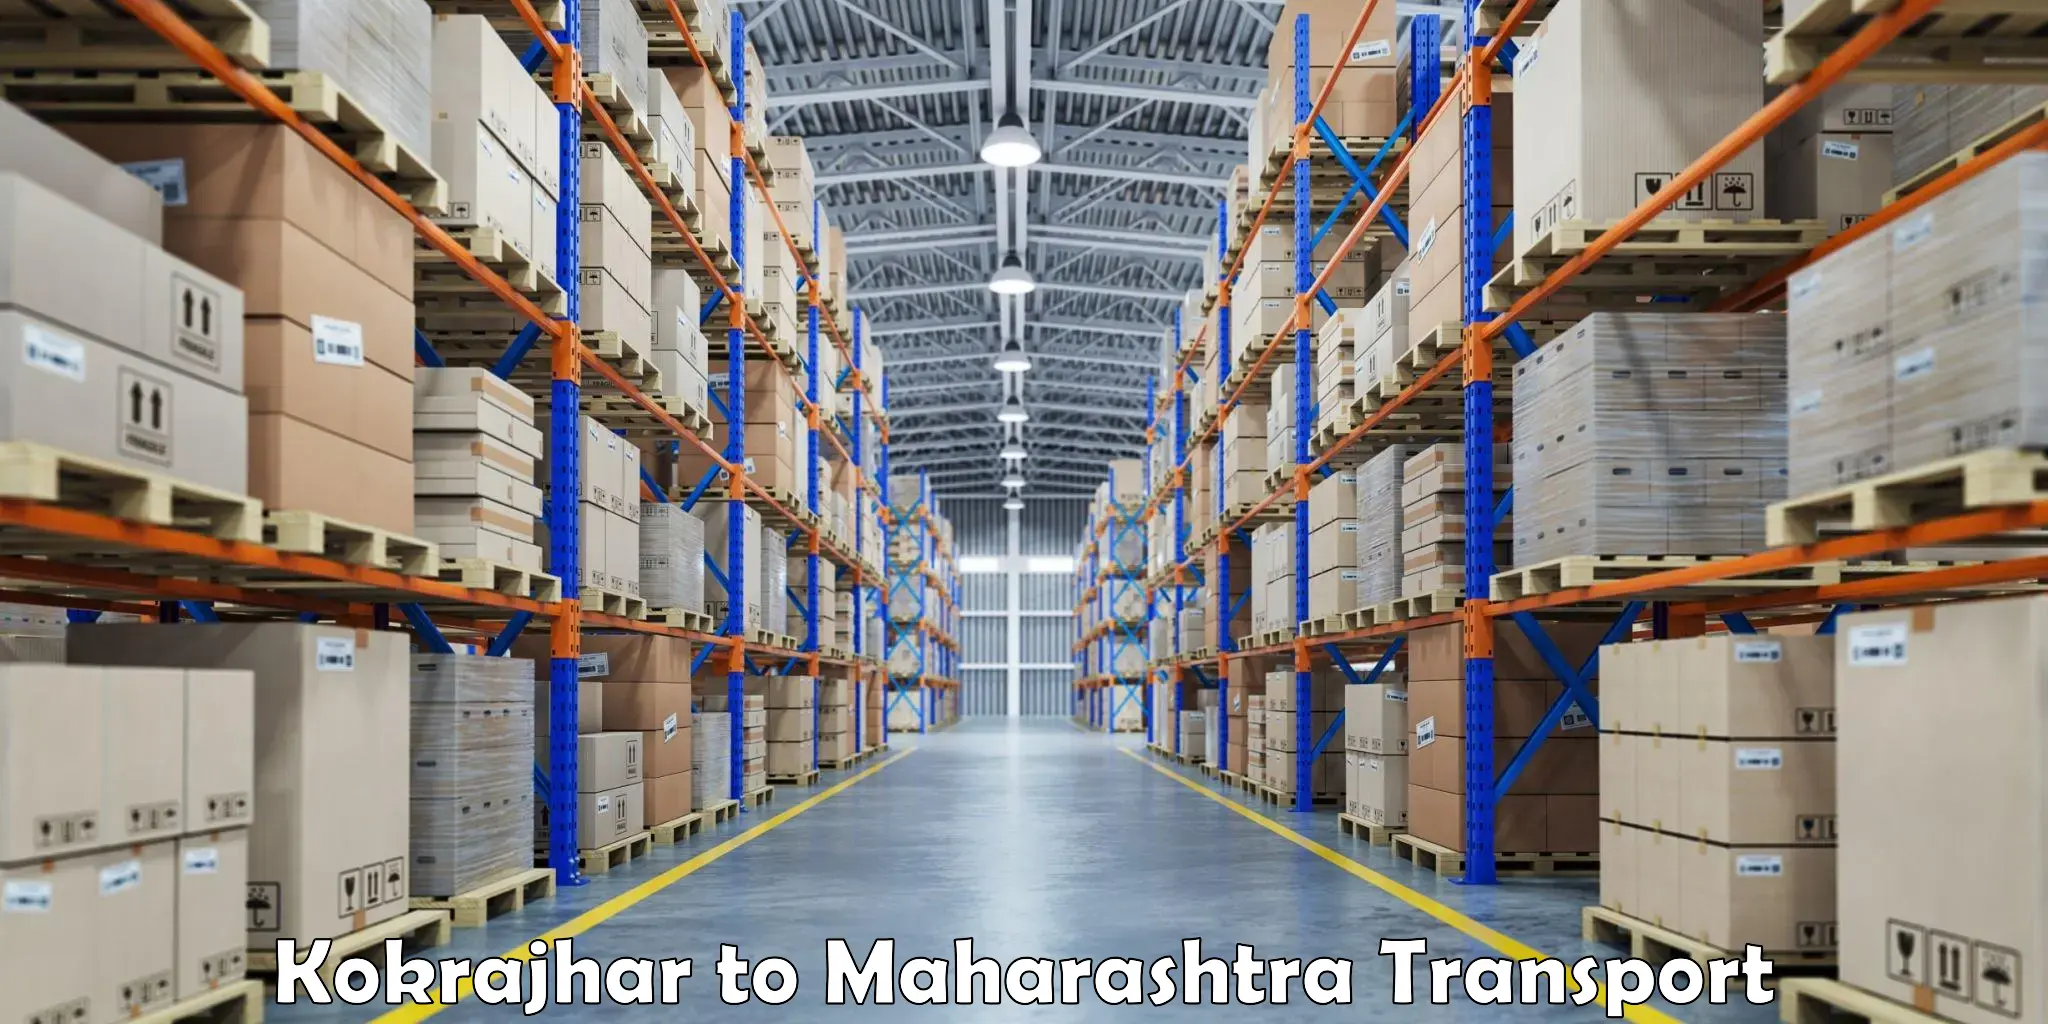 Container transport service Kokrajhar to Buldhana